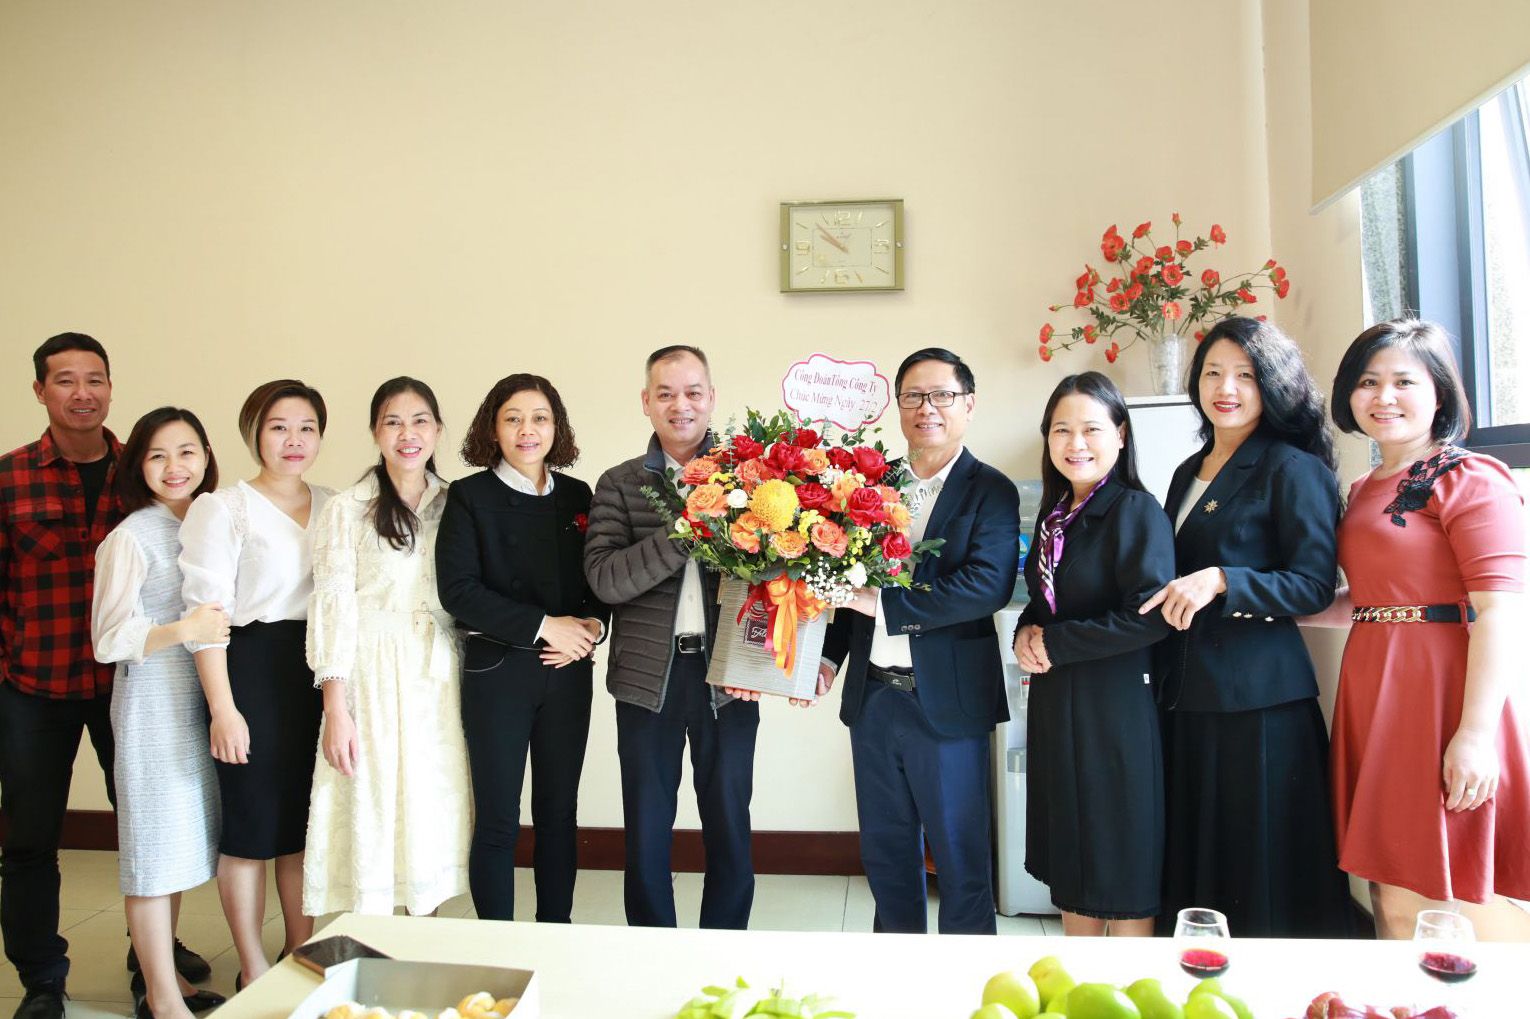 VATM: Chúc mừng đội ngũ y bác sỹ nhân ngày Thầy thuốc Việt Nam